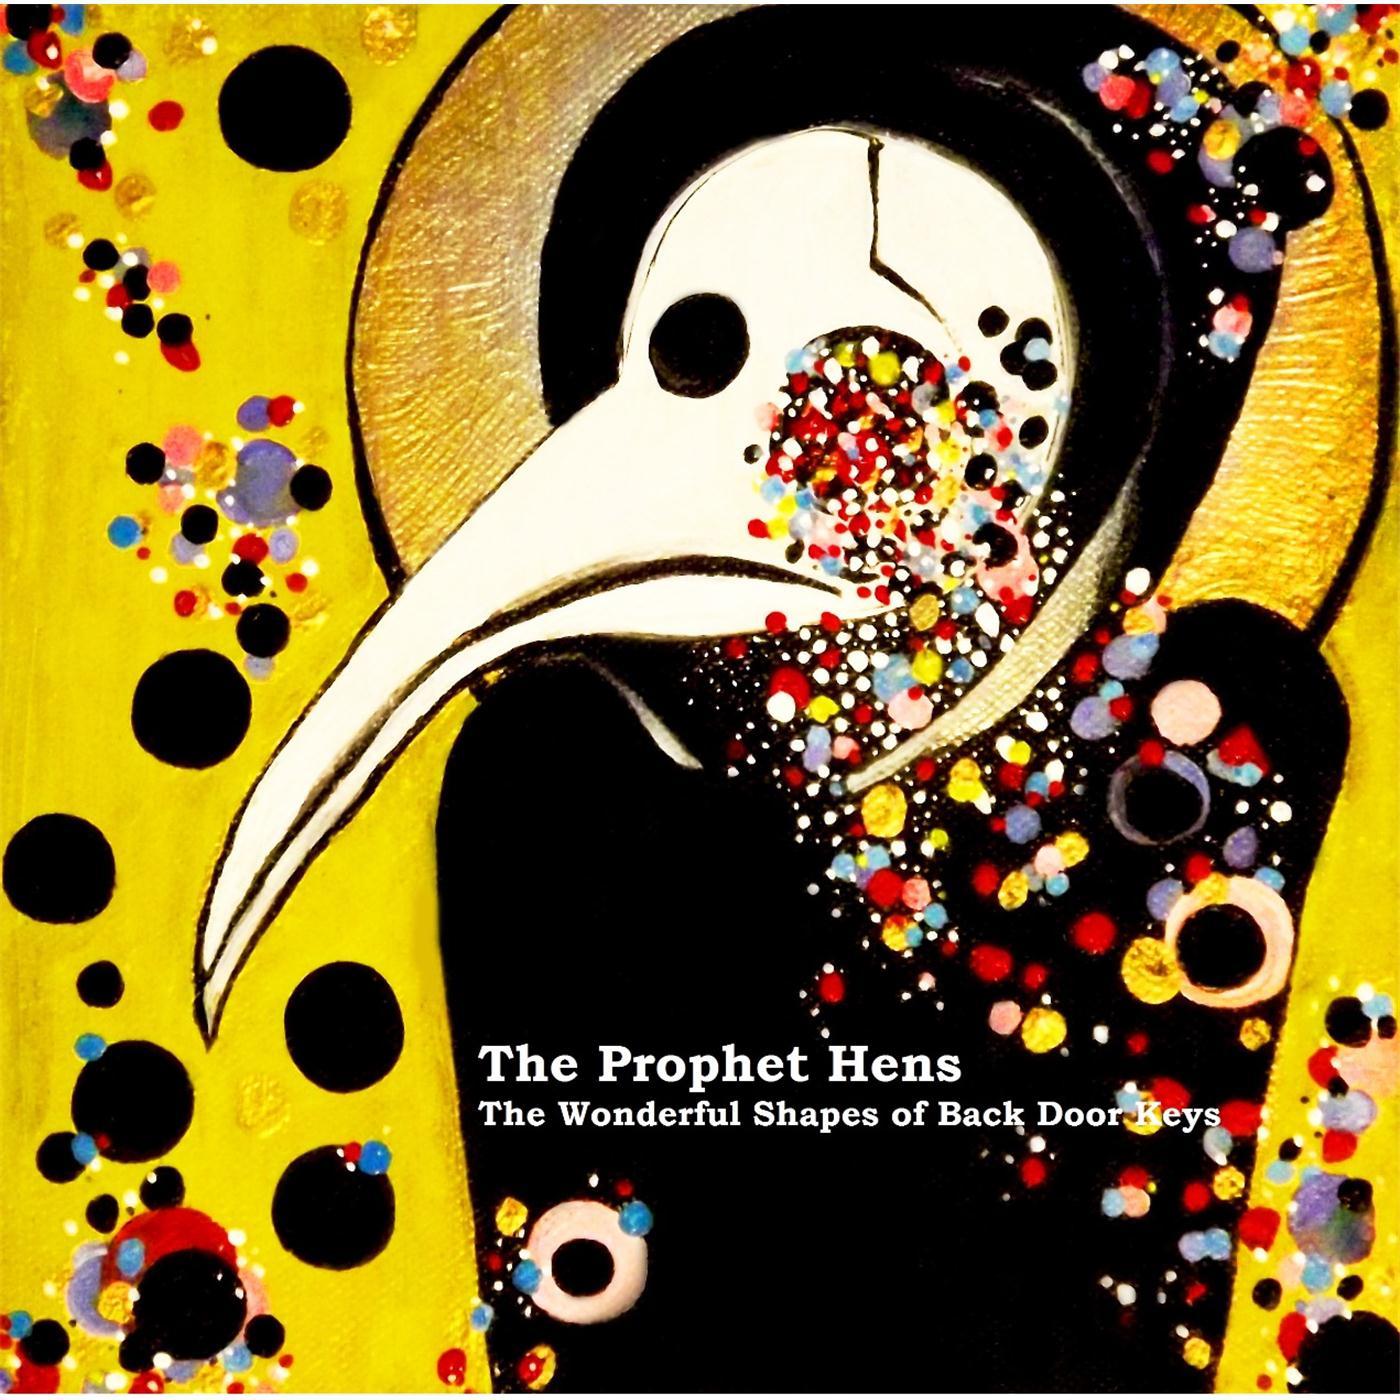 The Prophet Hens - Songman